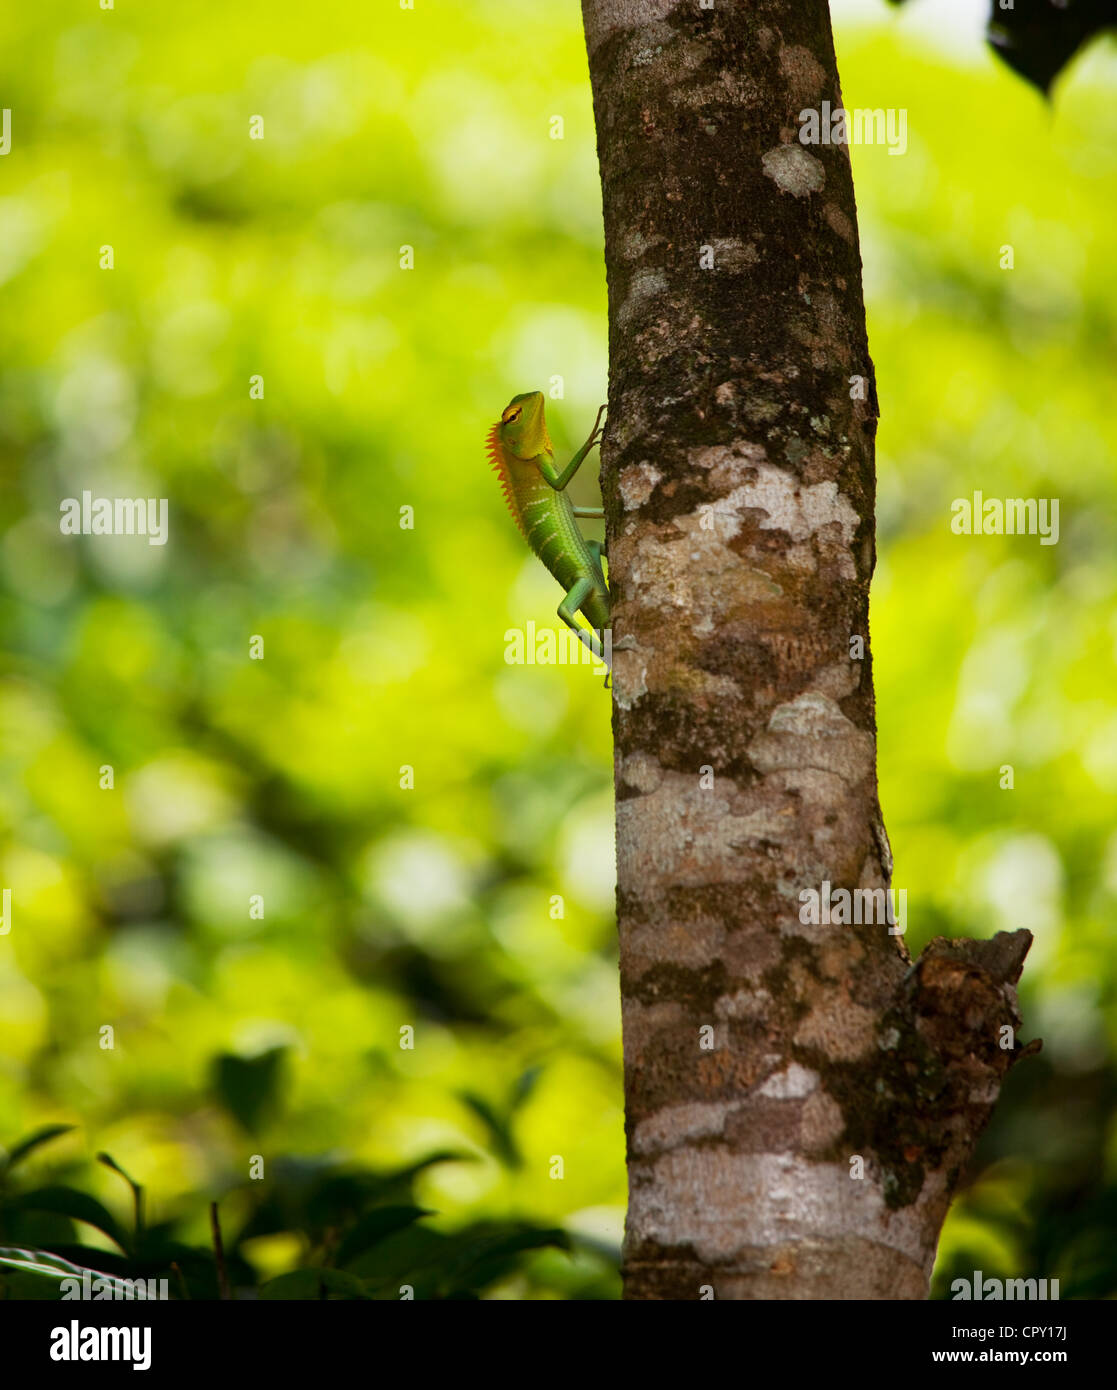 chameleon in rain forest on Sri Lanka Stock Photo